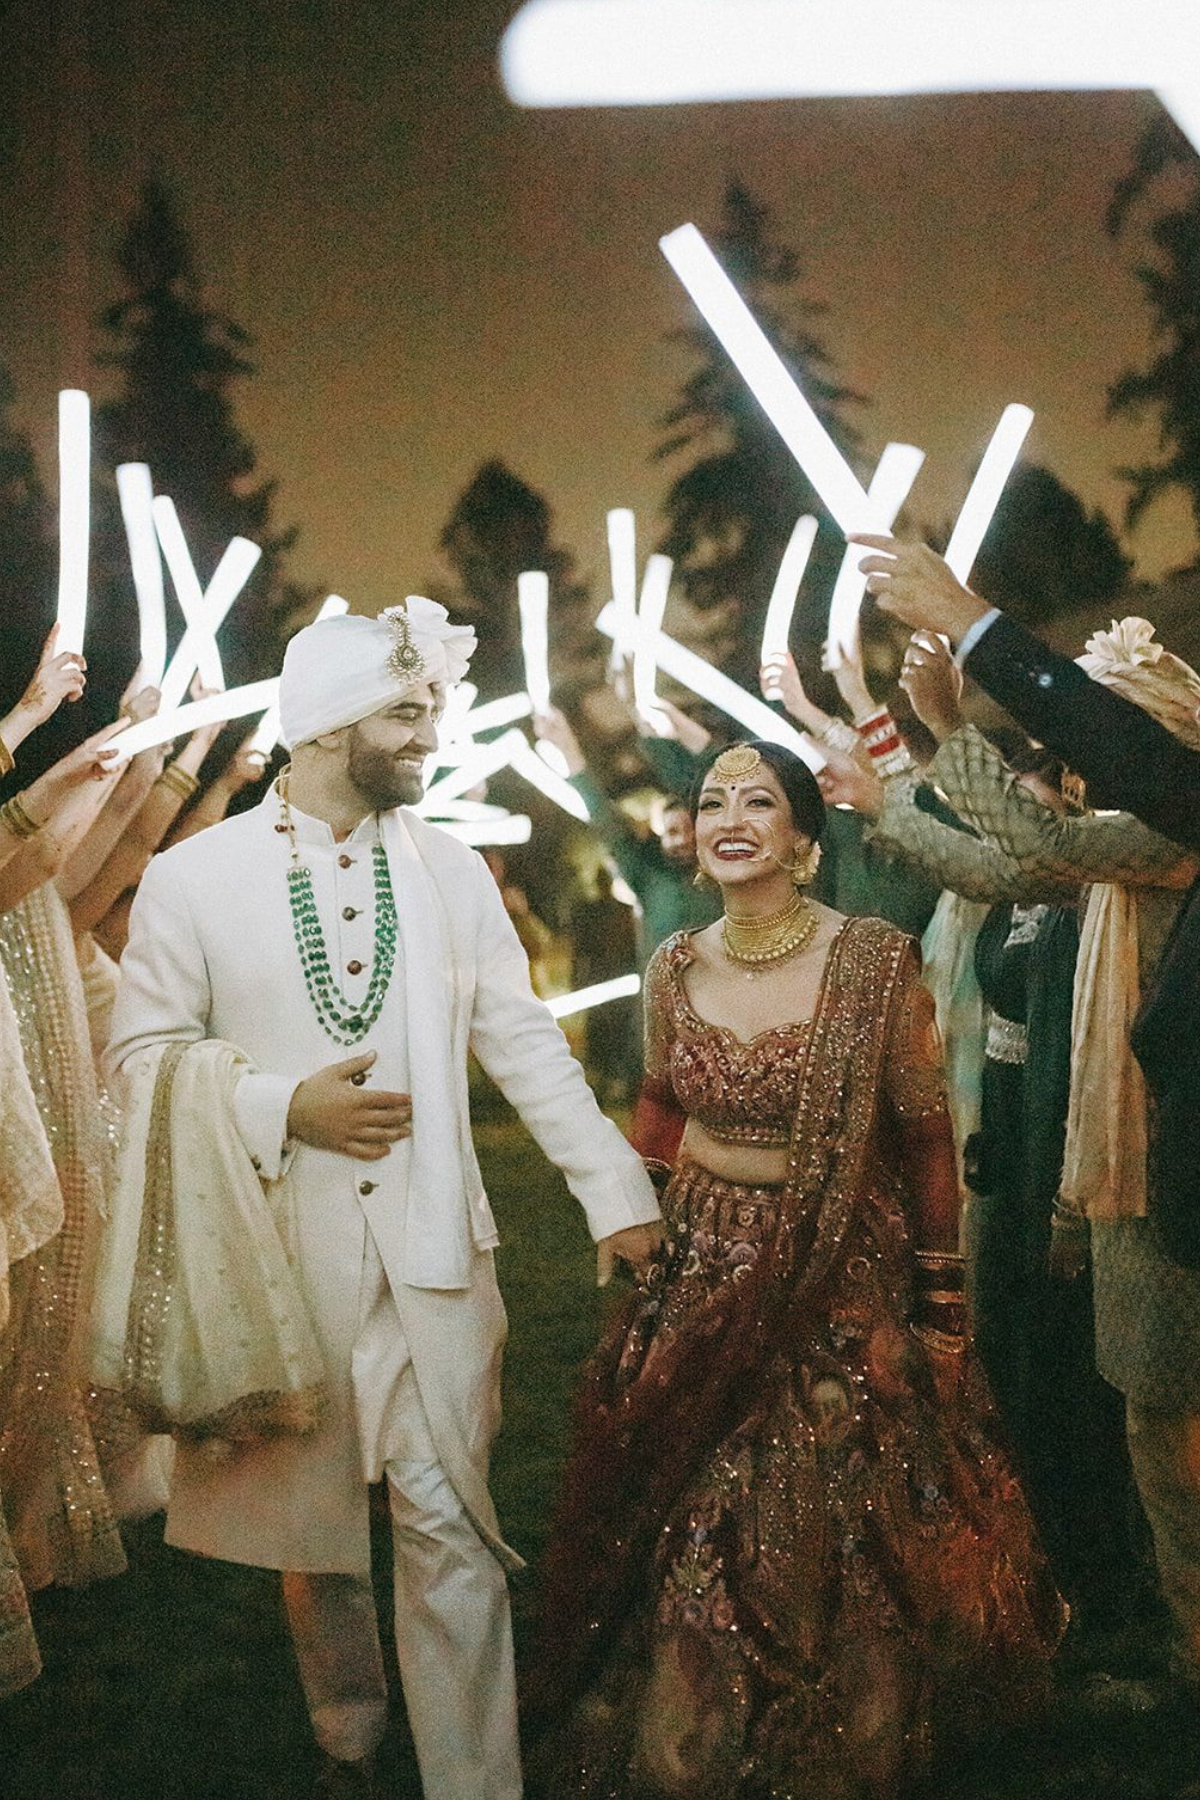 outdoor-garden-hindu-wedding-tent-greenery-bride-groom-glow-sticks